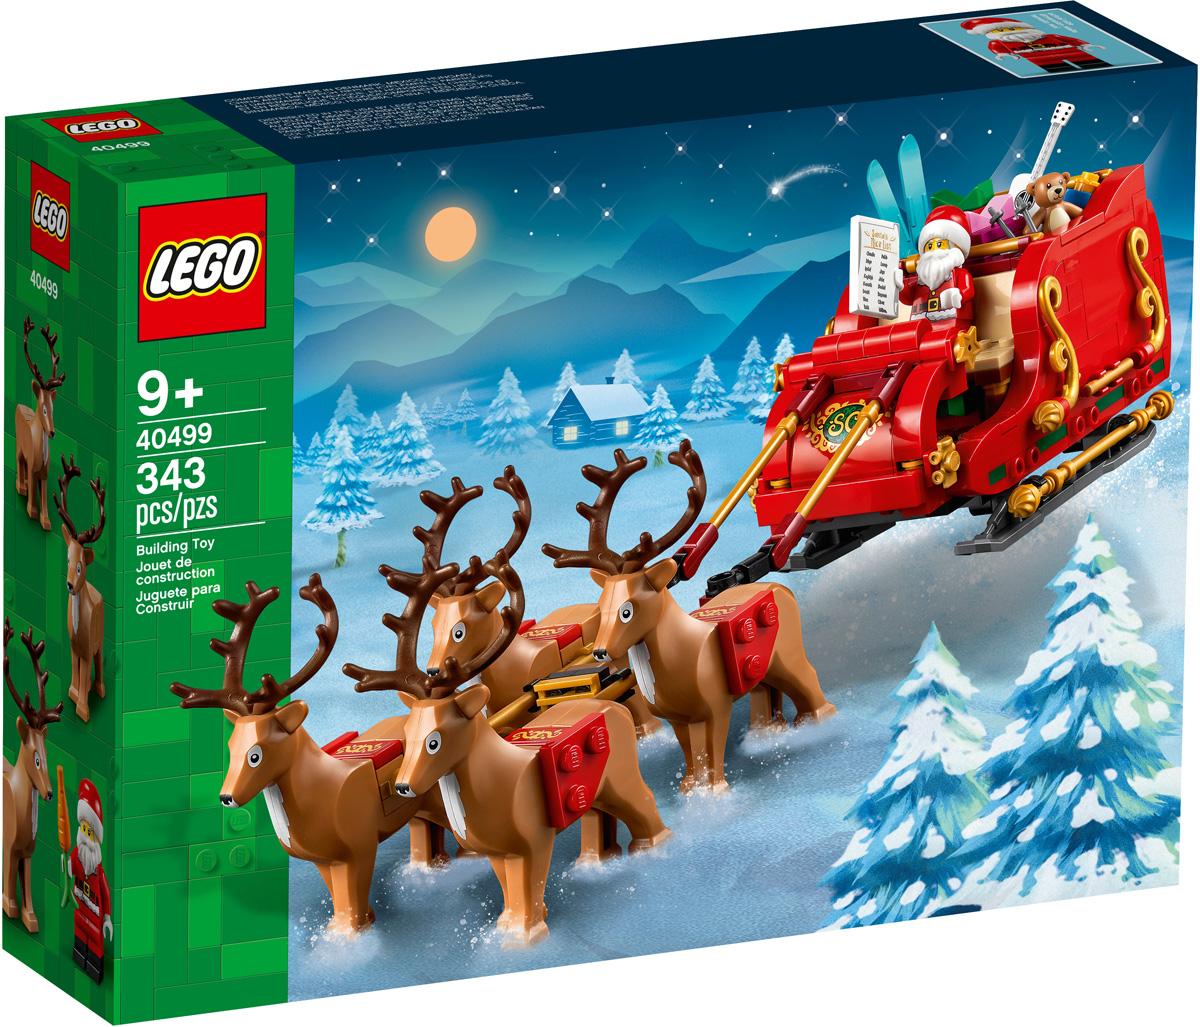 343-Piece LEGO Santa's Sleigh for $36.99 Shipped